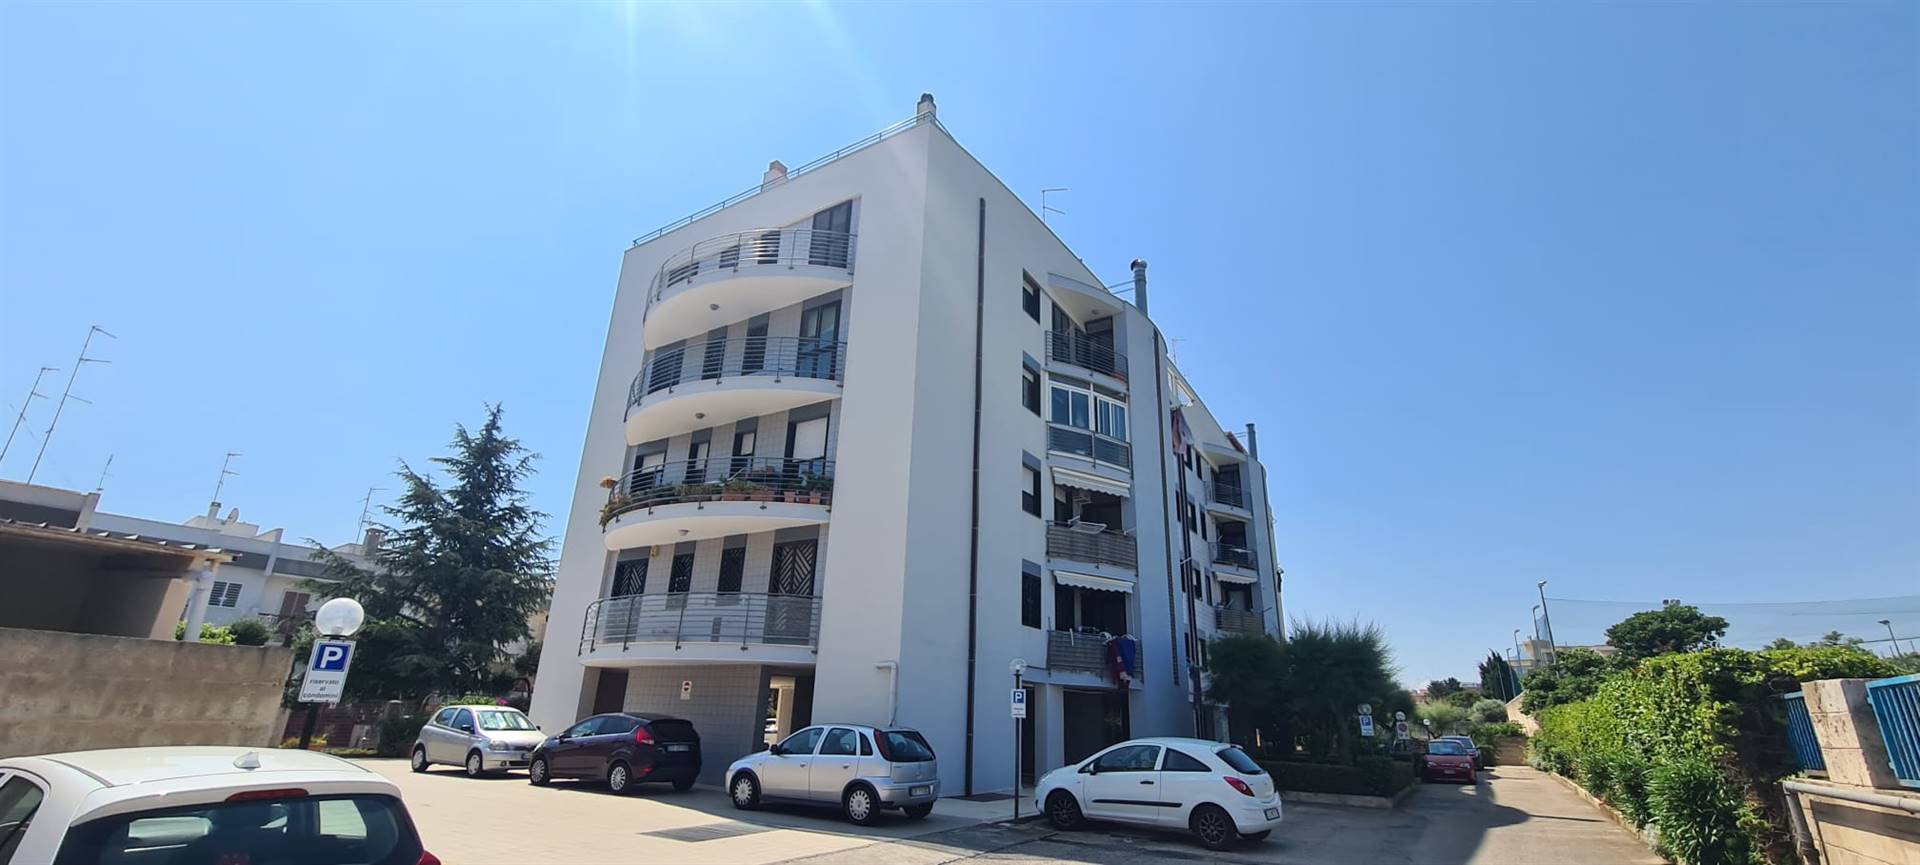 Appartamento in vendita a Bari, 2 locali, zona se, prezzo € 165.000 | PortaleAgenzieImmobiliari.it